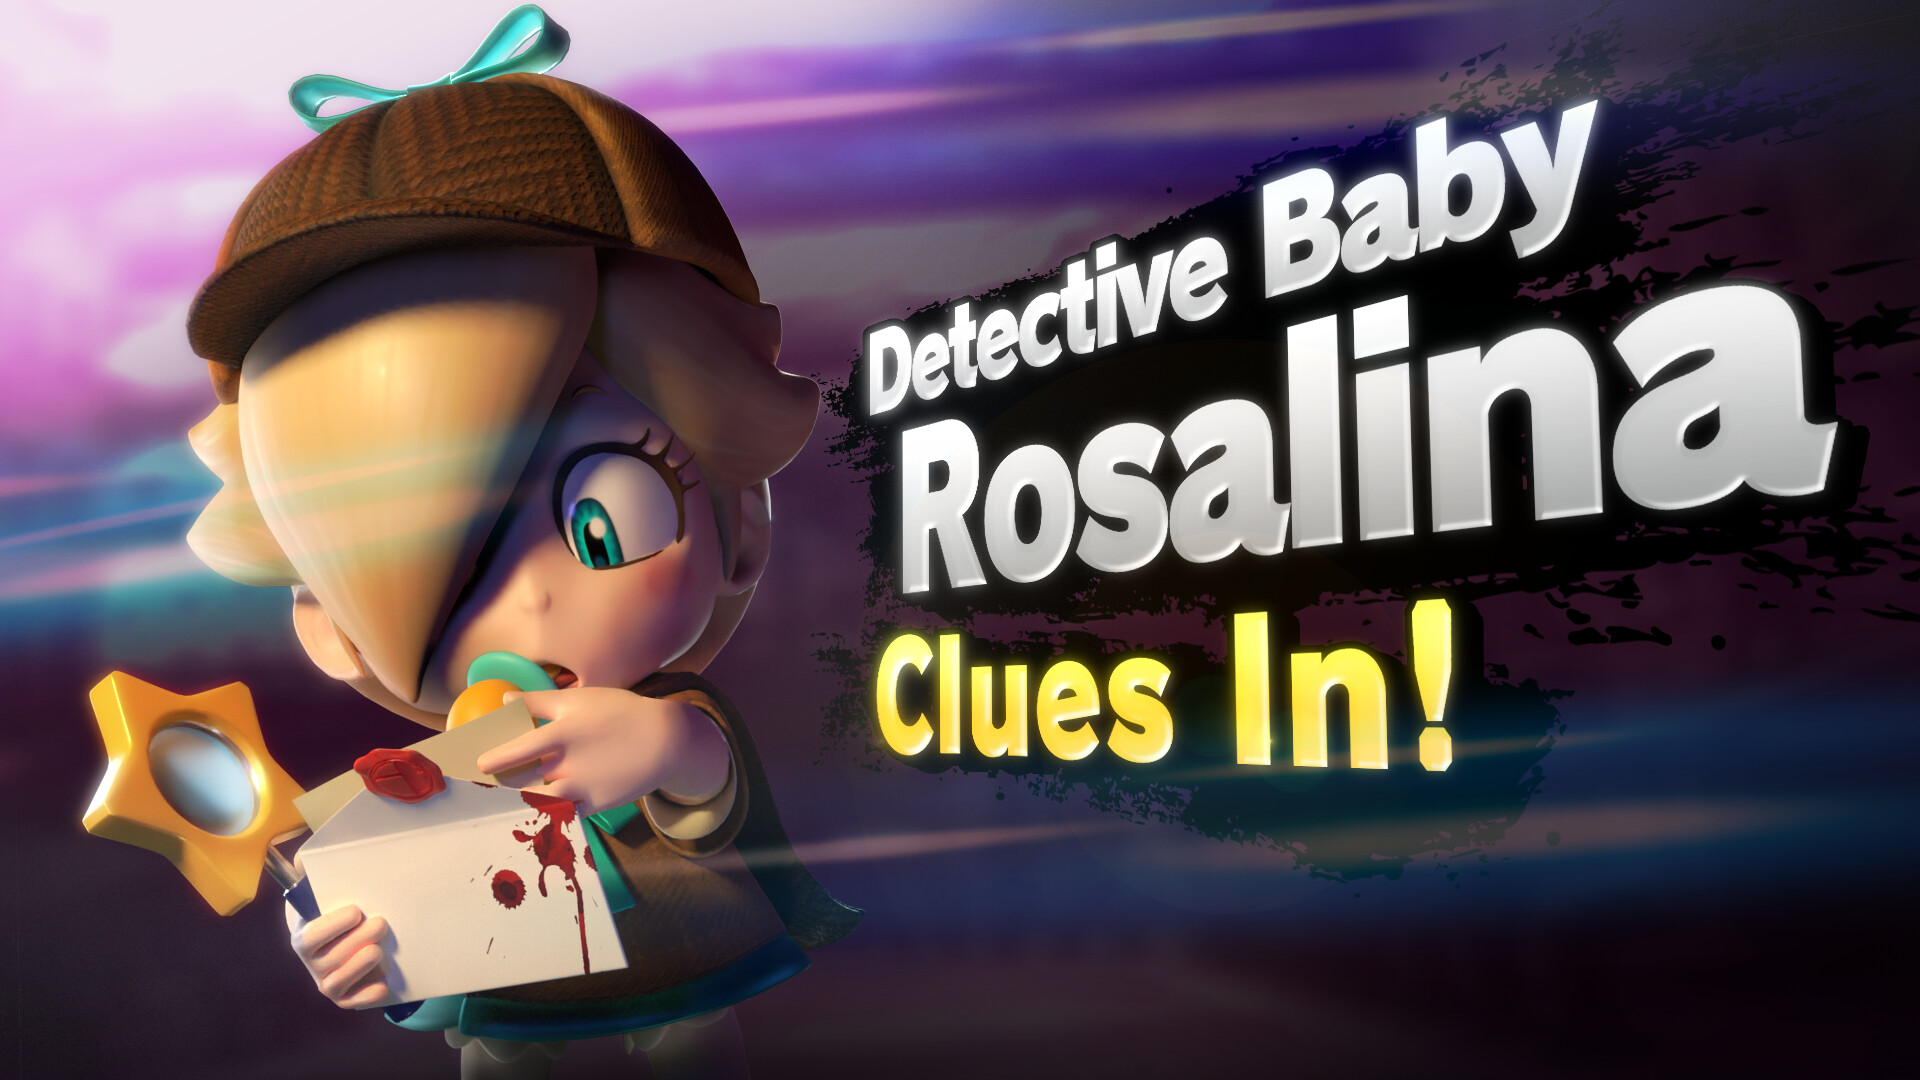 rosalina has a baby